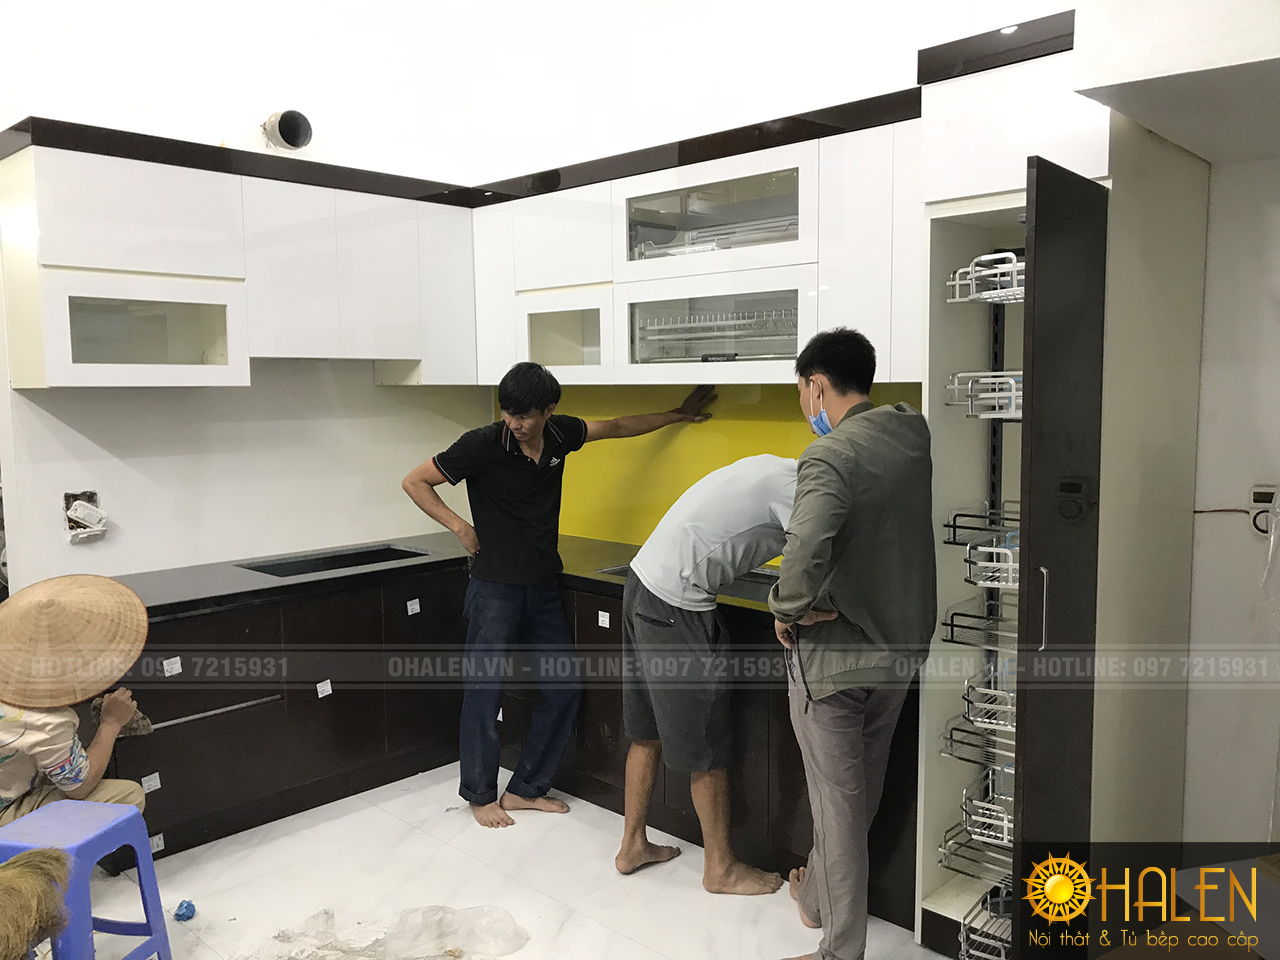 OHALEN chuyên thiết kế và thi công tủ bếp tại Hà Nội và các tỉnh phía Bắc